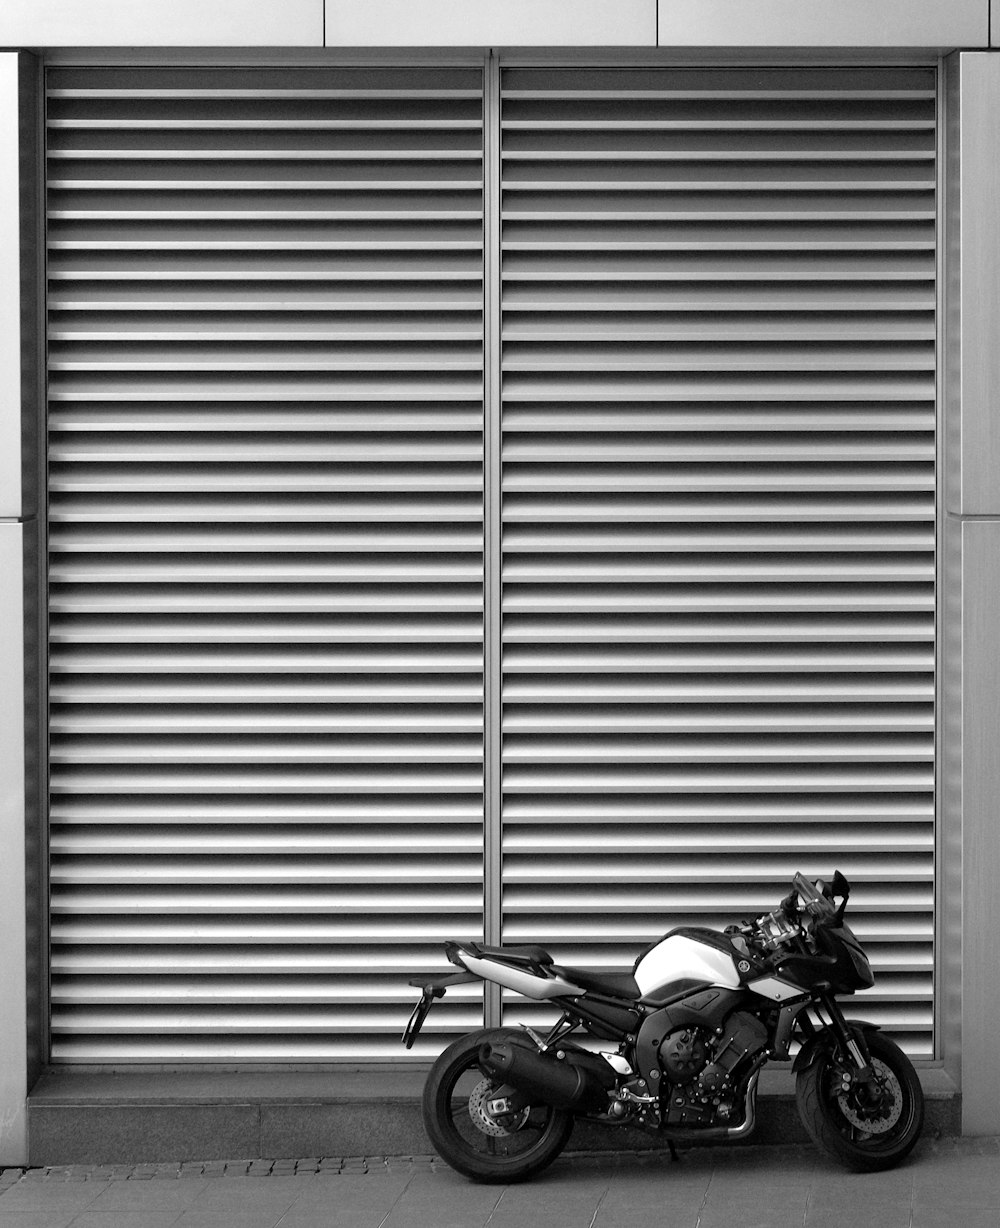 Motocicletta Backbone parcheggiata accanto alla porta avvolgibile